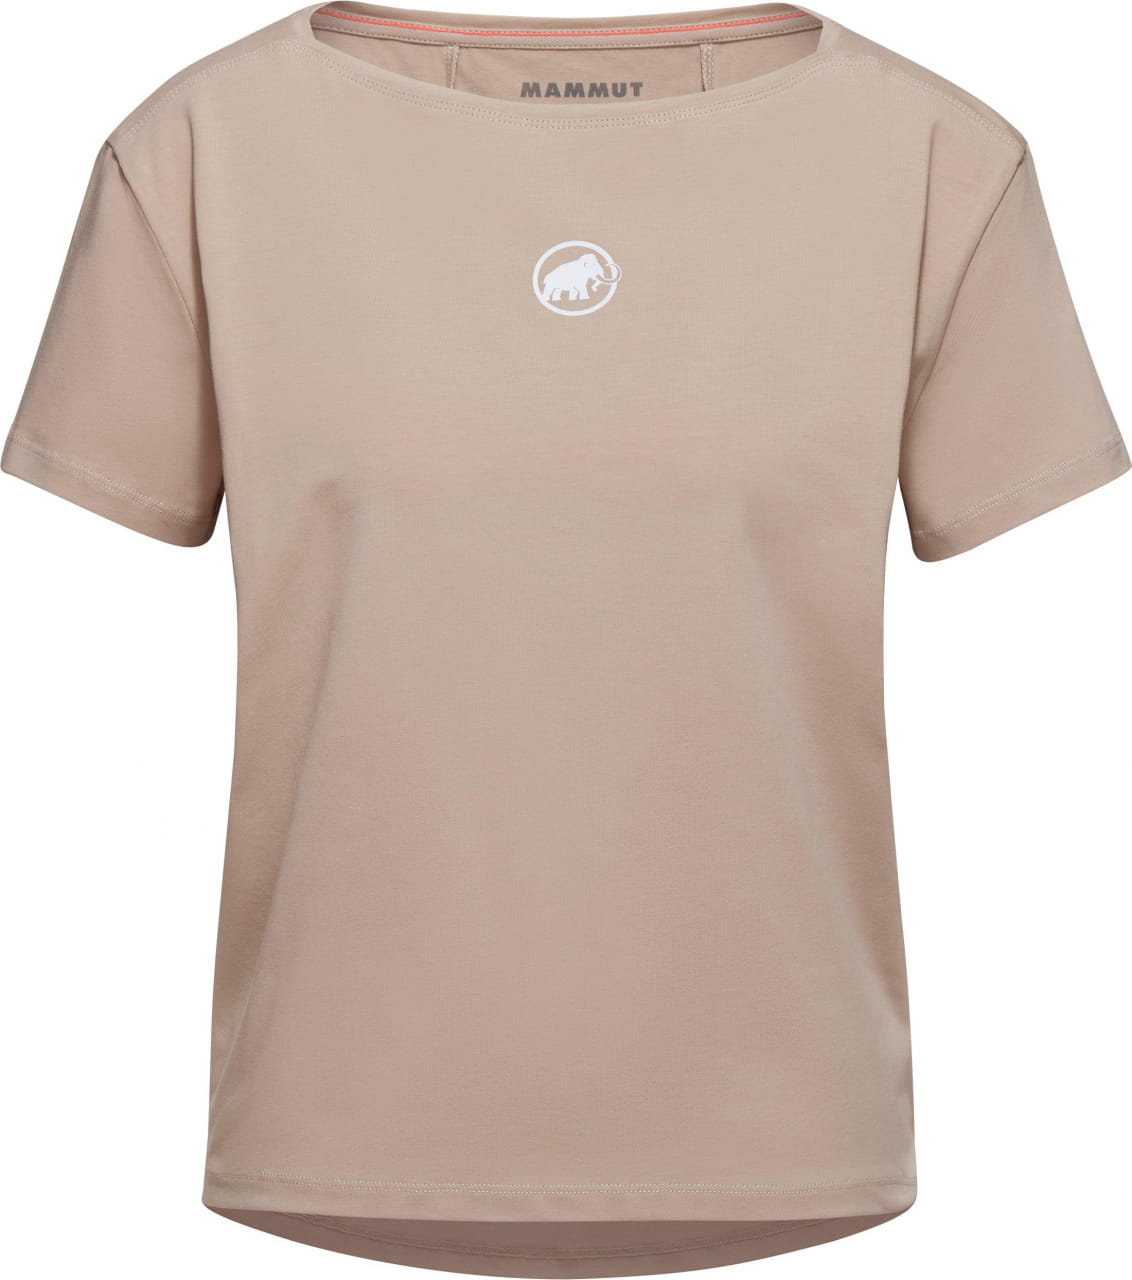 Sporthemd für Frauen Mammut Seon T-Shirt Women Original